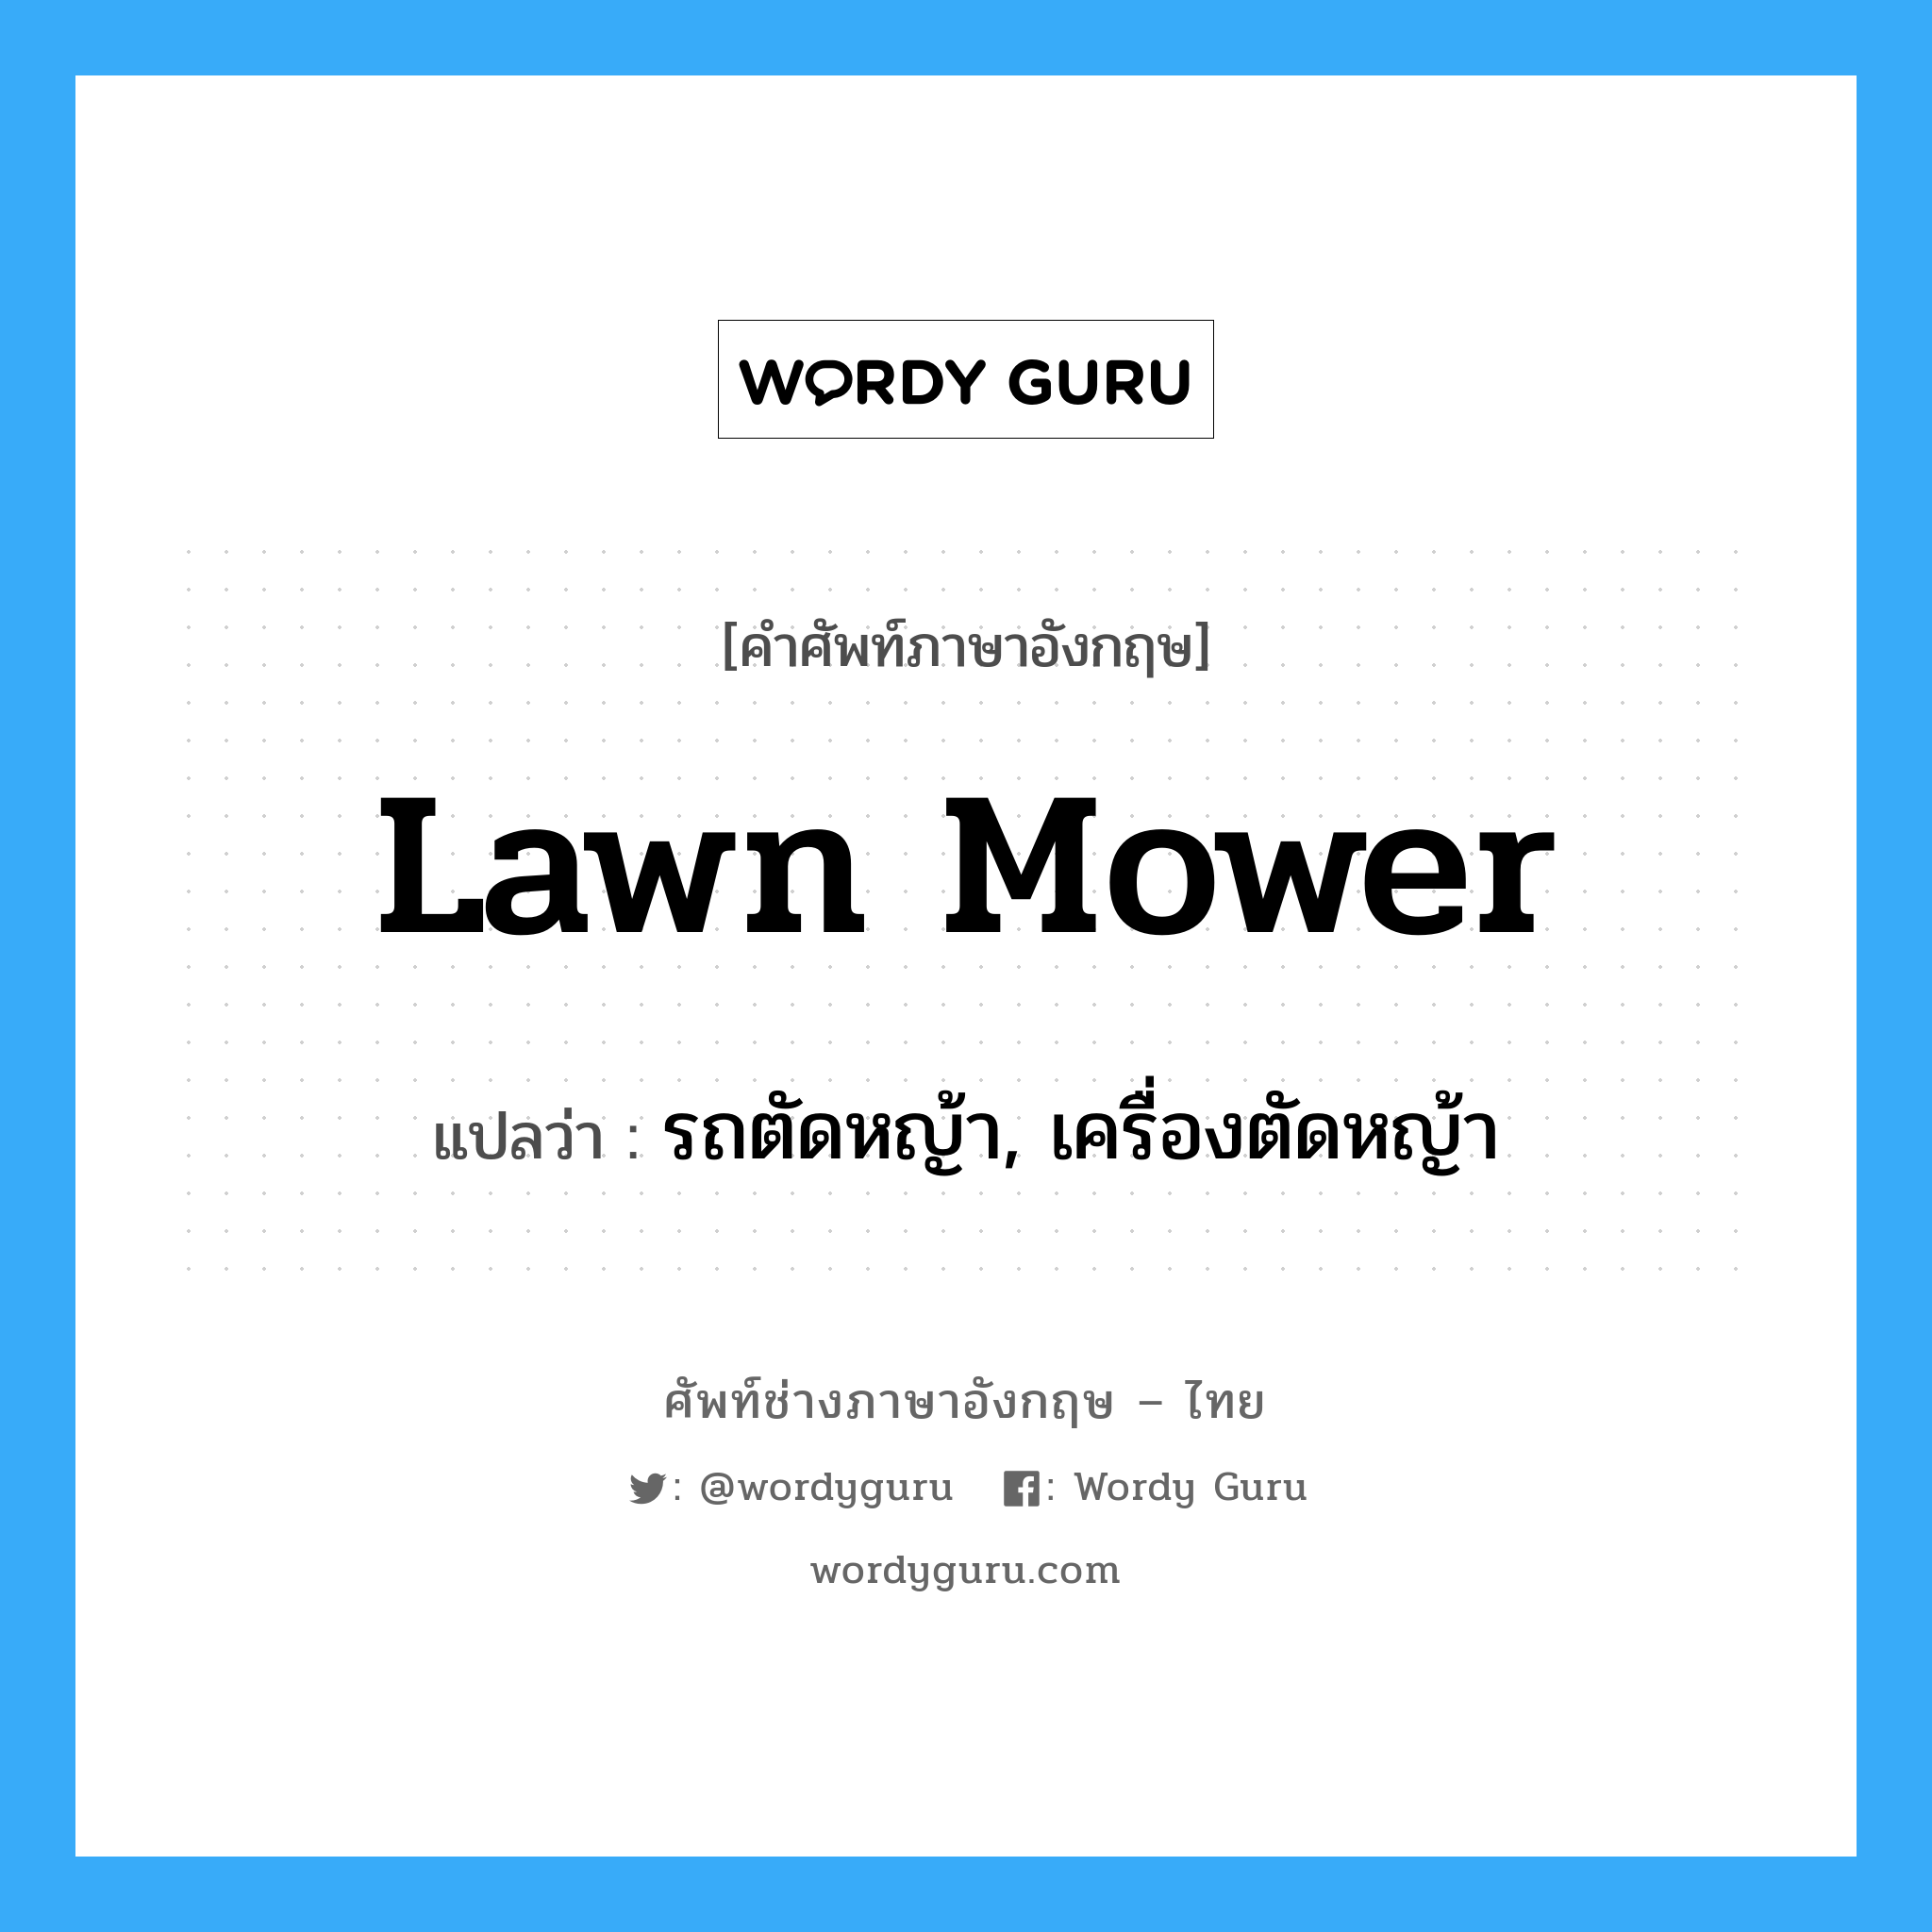 lawn mower แปลว่า?, คำศัพท์ช่างภาษาอังกฤษ - ไทย lawn mower คำศัพท์ภาษาอังกฤษ lawn mower แปลว่า รถตัดหญ้า, เครื่องตัดหญ้า